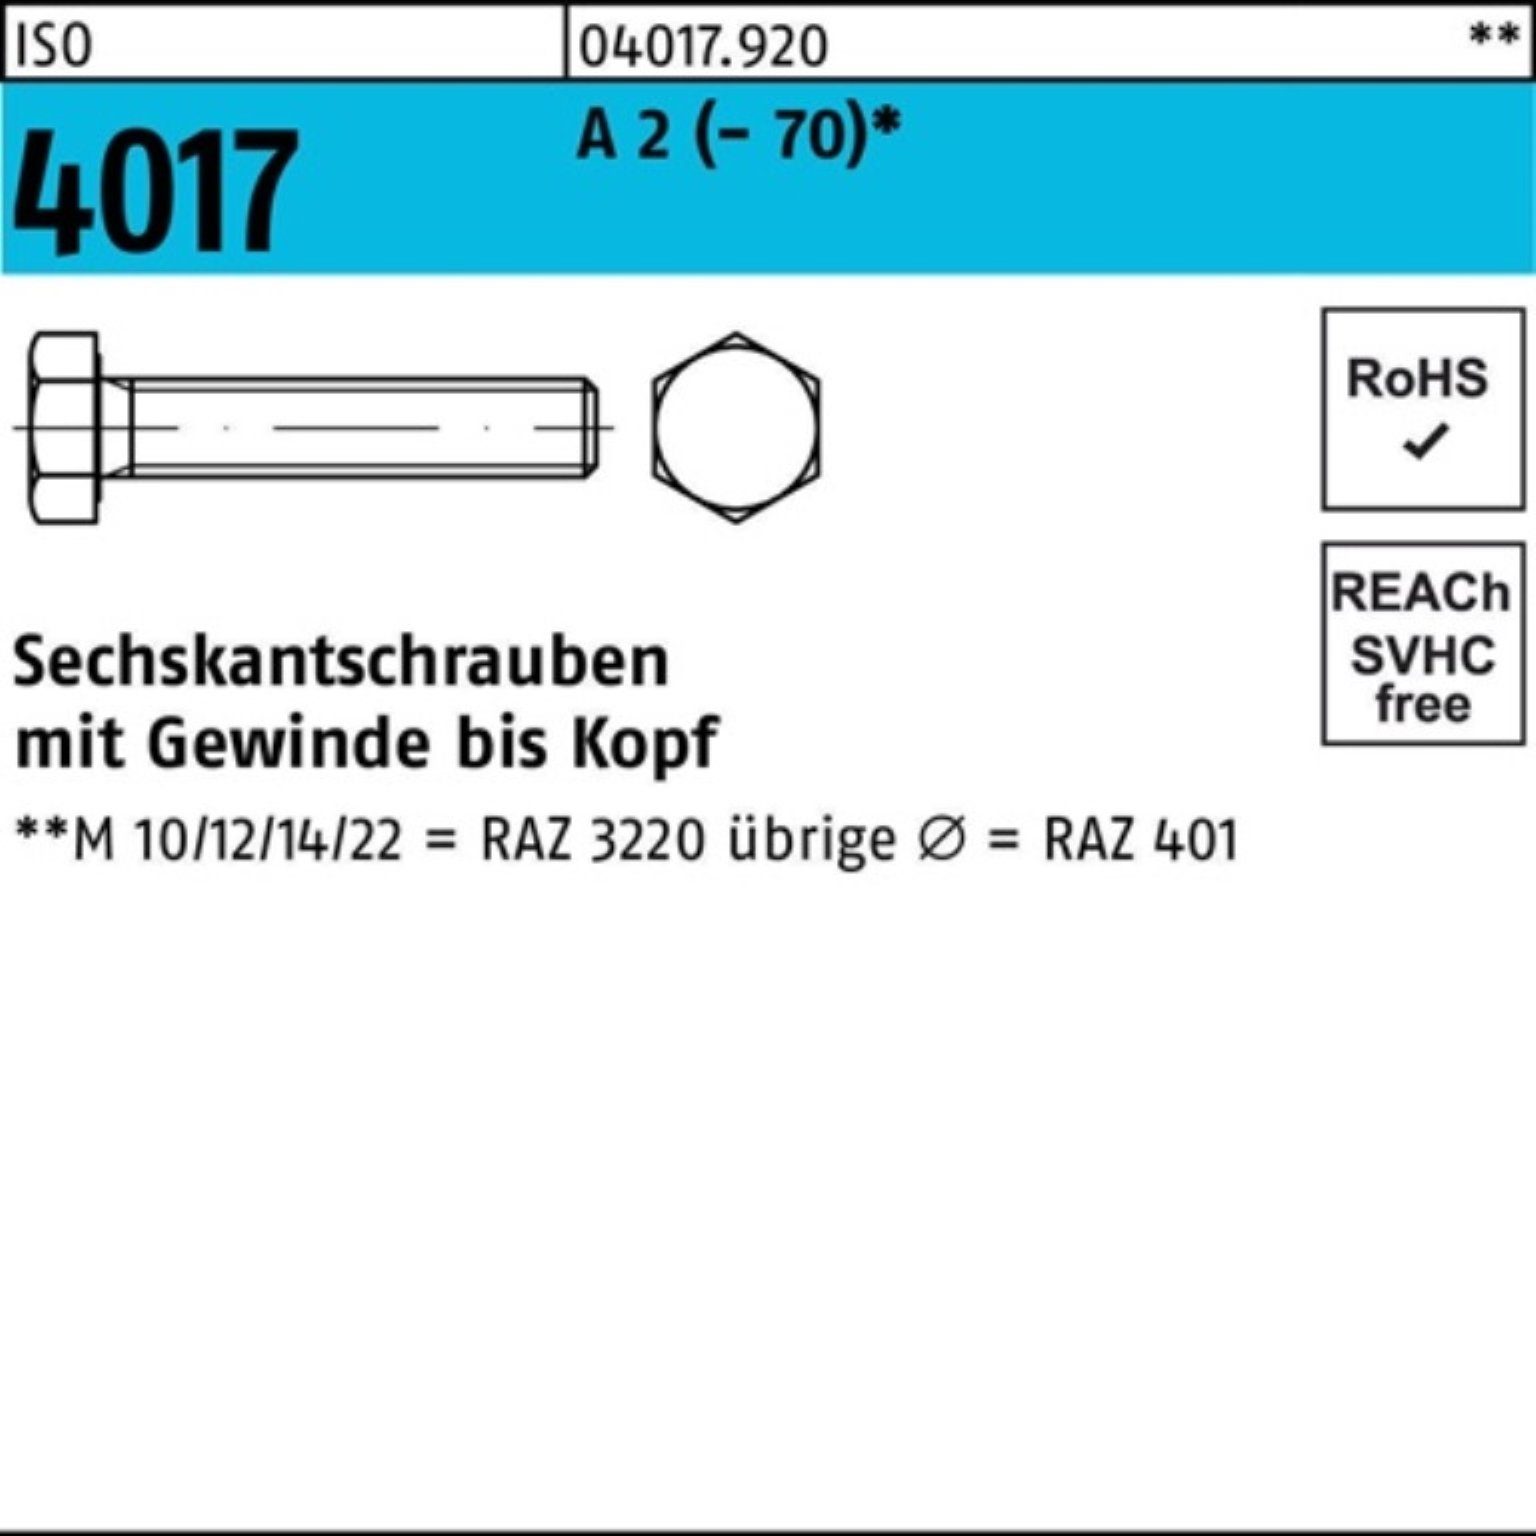 Bufab Sechskantschraube 100er Pack Sechskantschraube ISO 4017 VG M10x 35 A 2 (70) 100 Stück